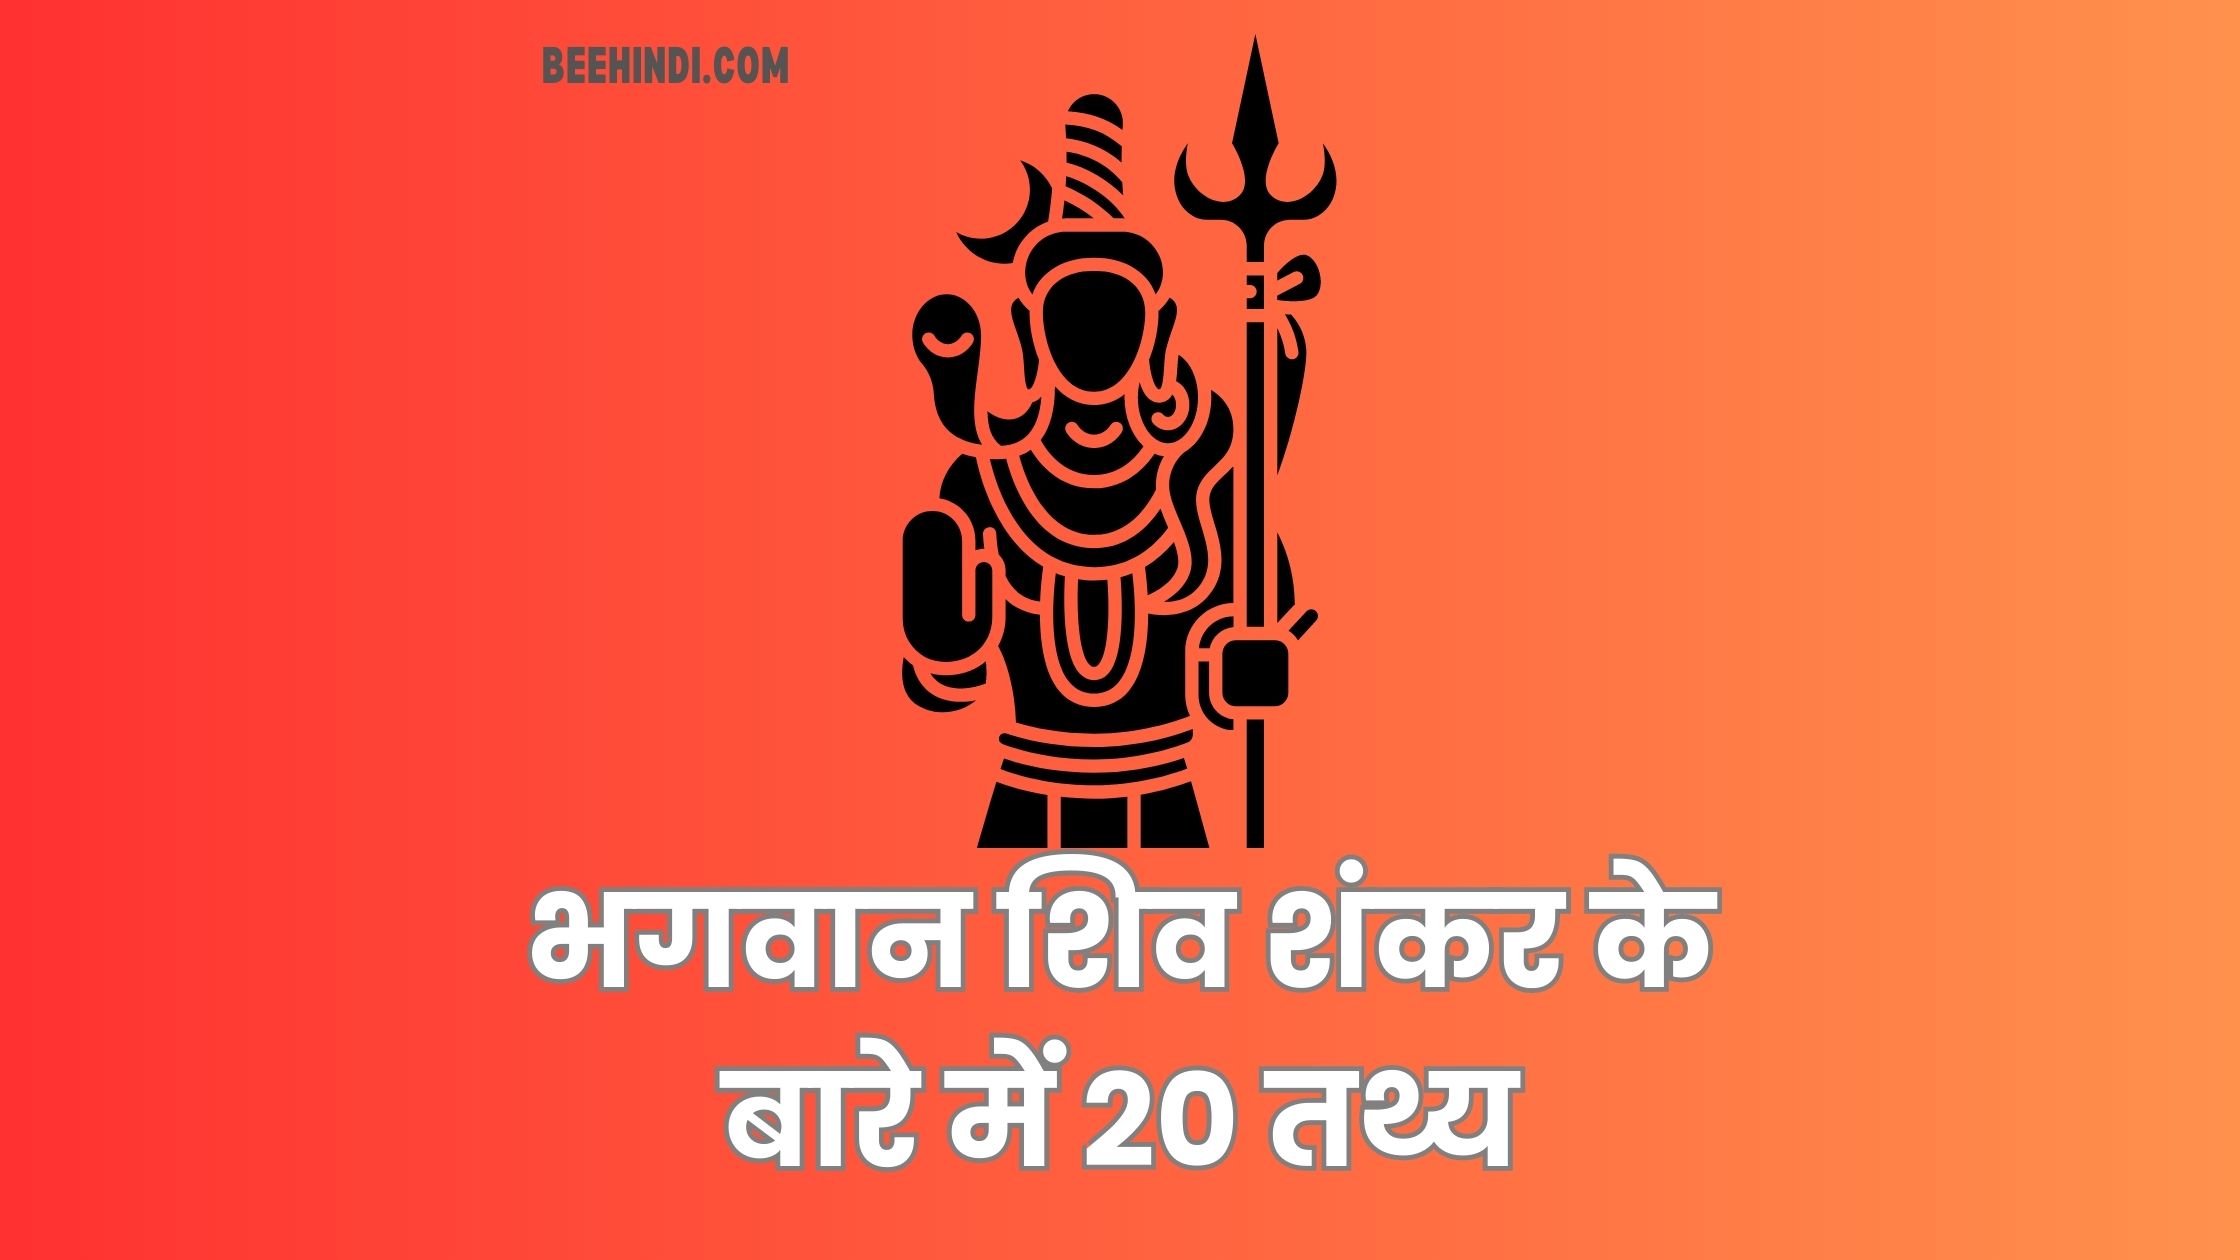 भगवान शिव शंकर के बारे में शीर्ष 20 तथ्य हिंदी में।